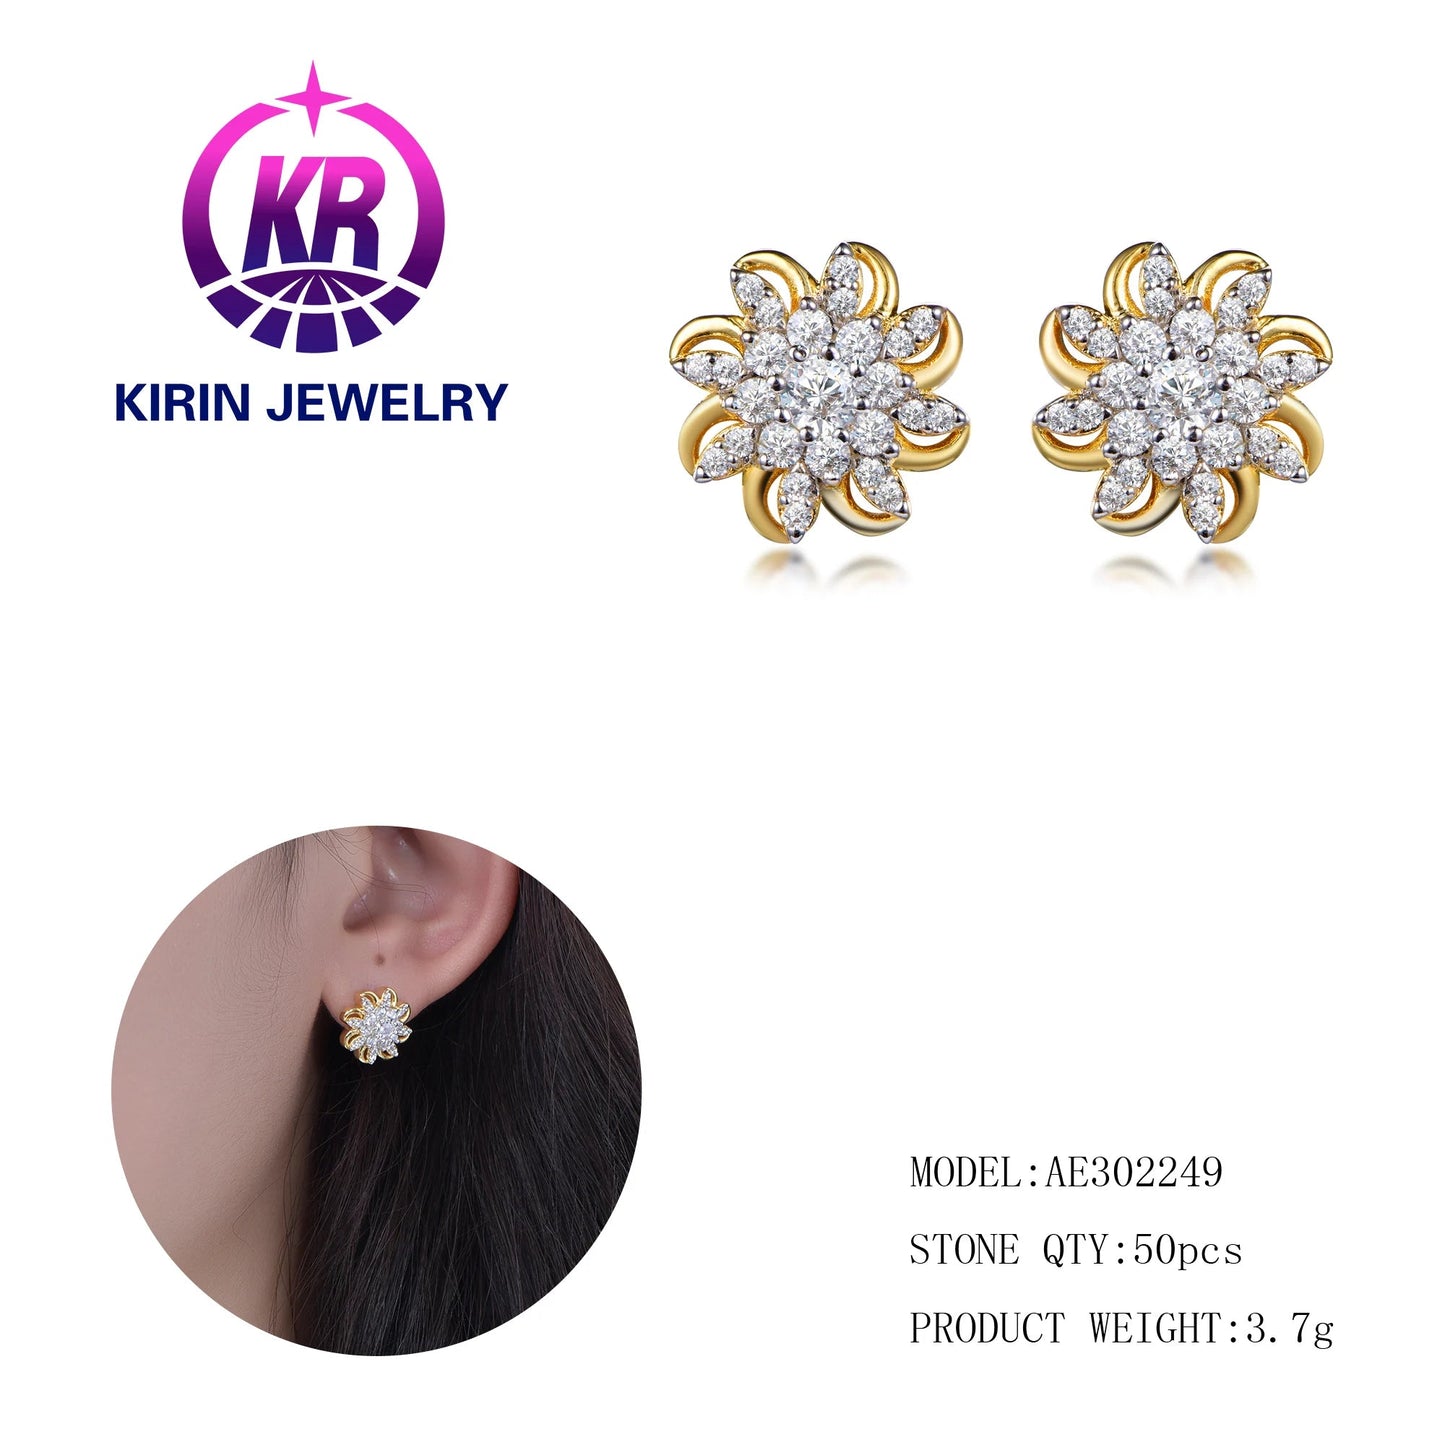 Spring Jewelry Luxury Women's Stud Earrings Wedding Statement Earrings Gold Flower Earrings For Gift Kirin Jewelry